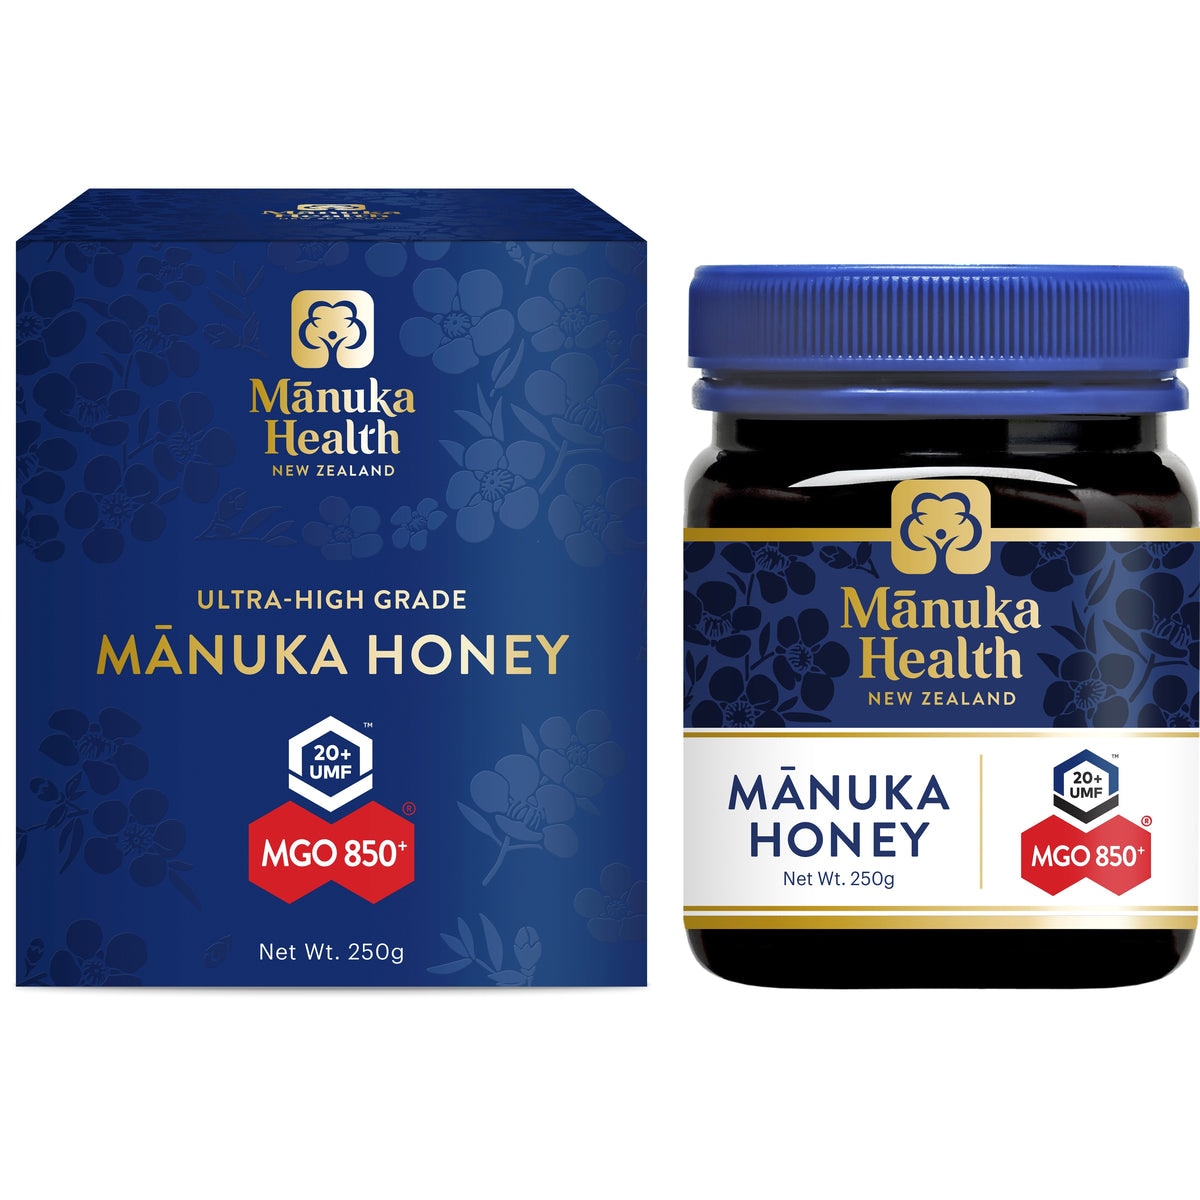 Manuka Health MGO 850+ UMF20+ Manuka Honey 250g